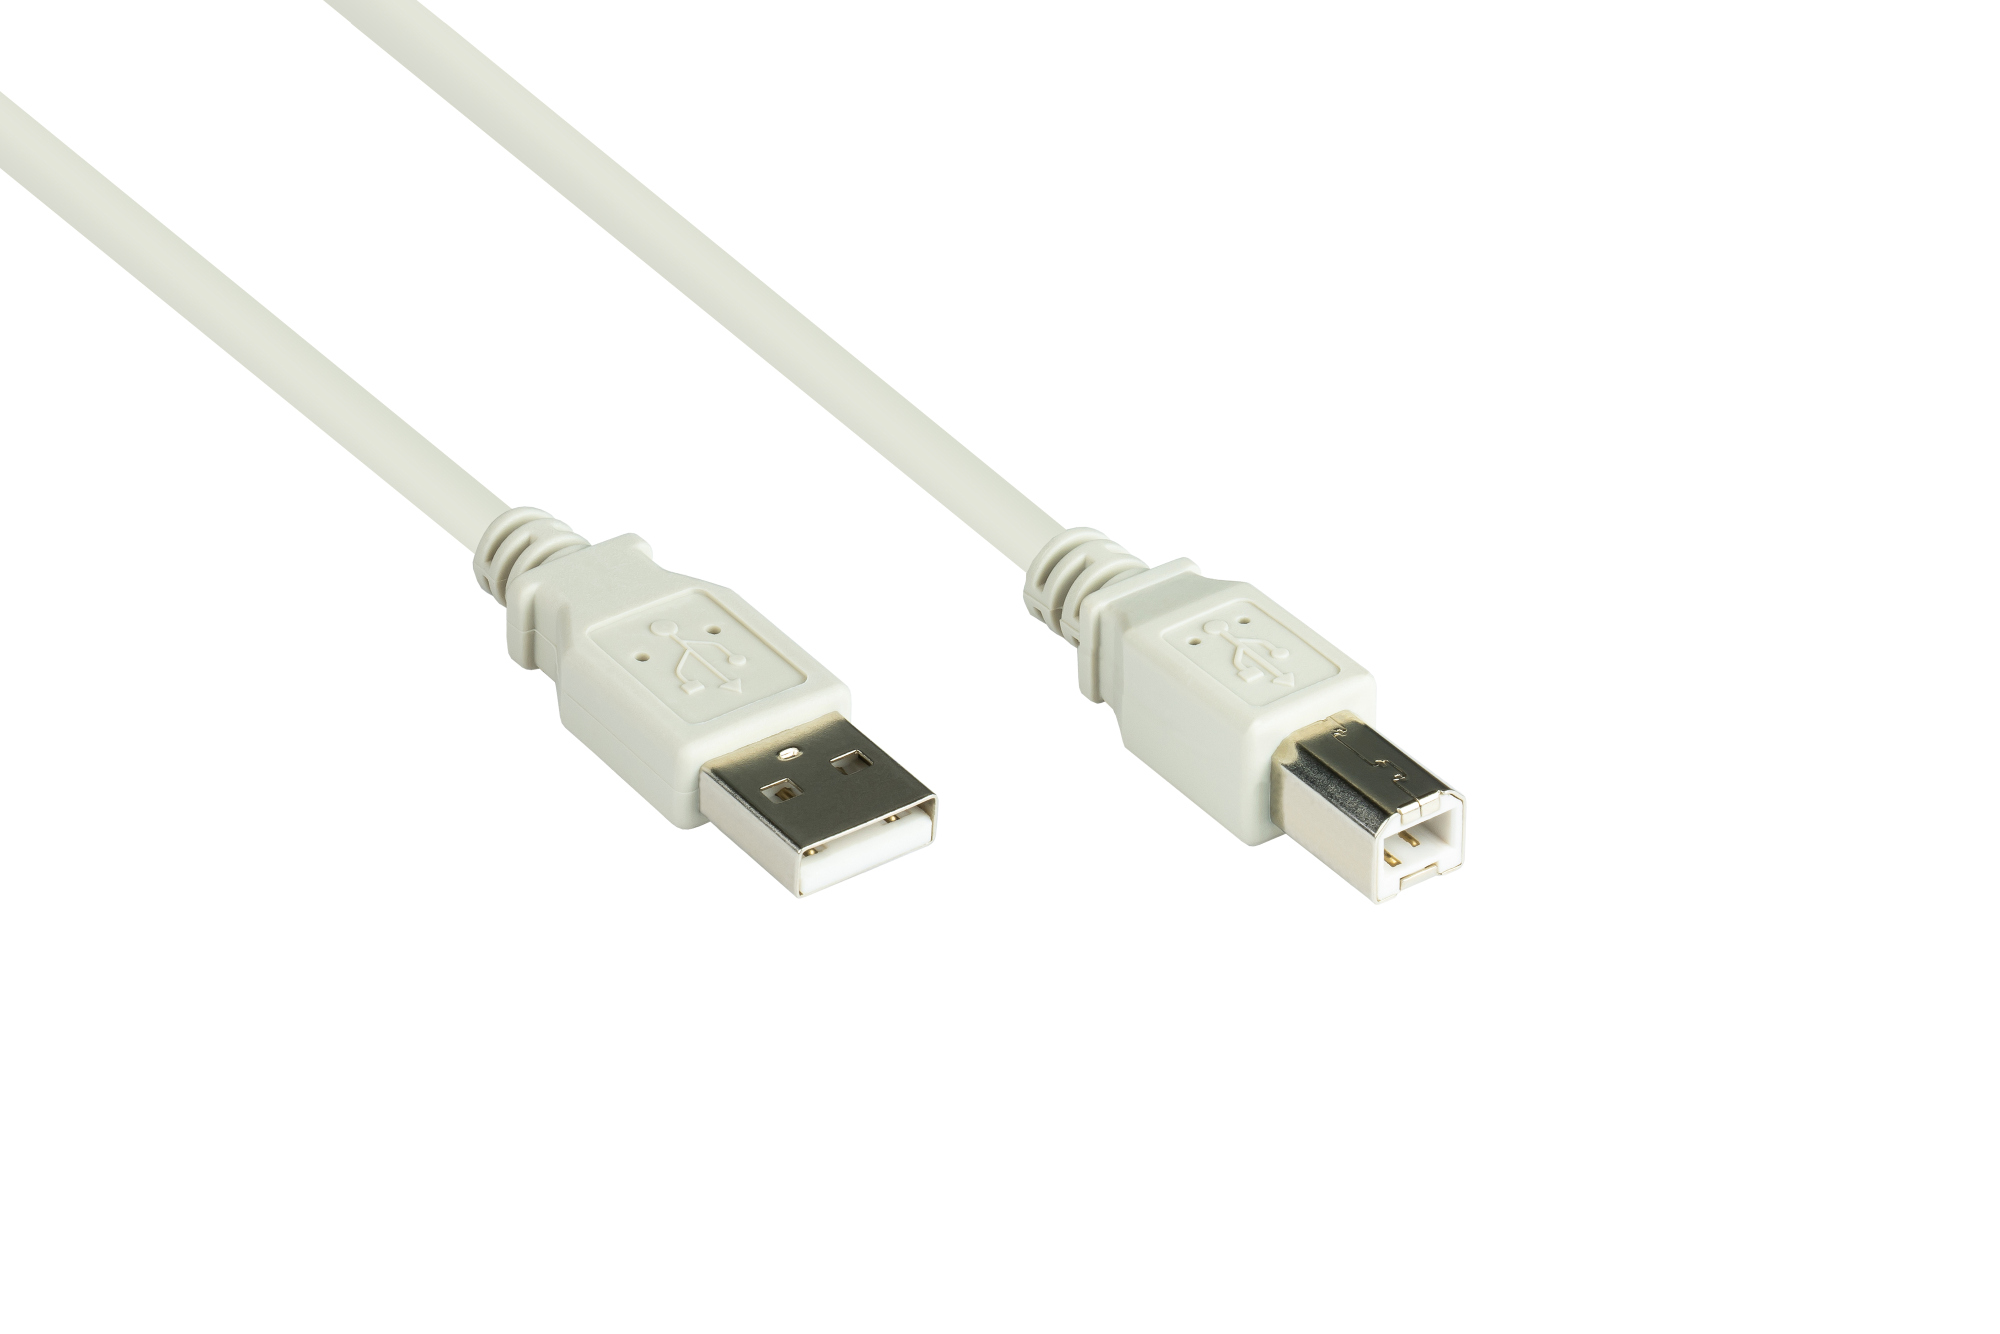 Anschlusskabel USB 2.0 Stecker A an Stecker B, grau, 0,5m, Good Connections®